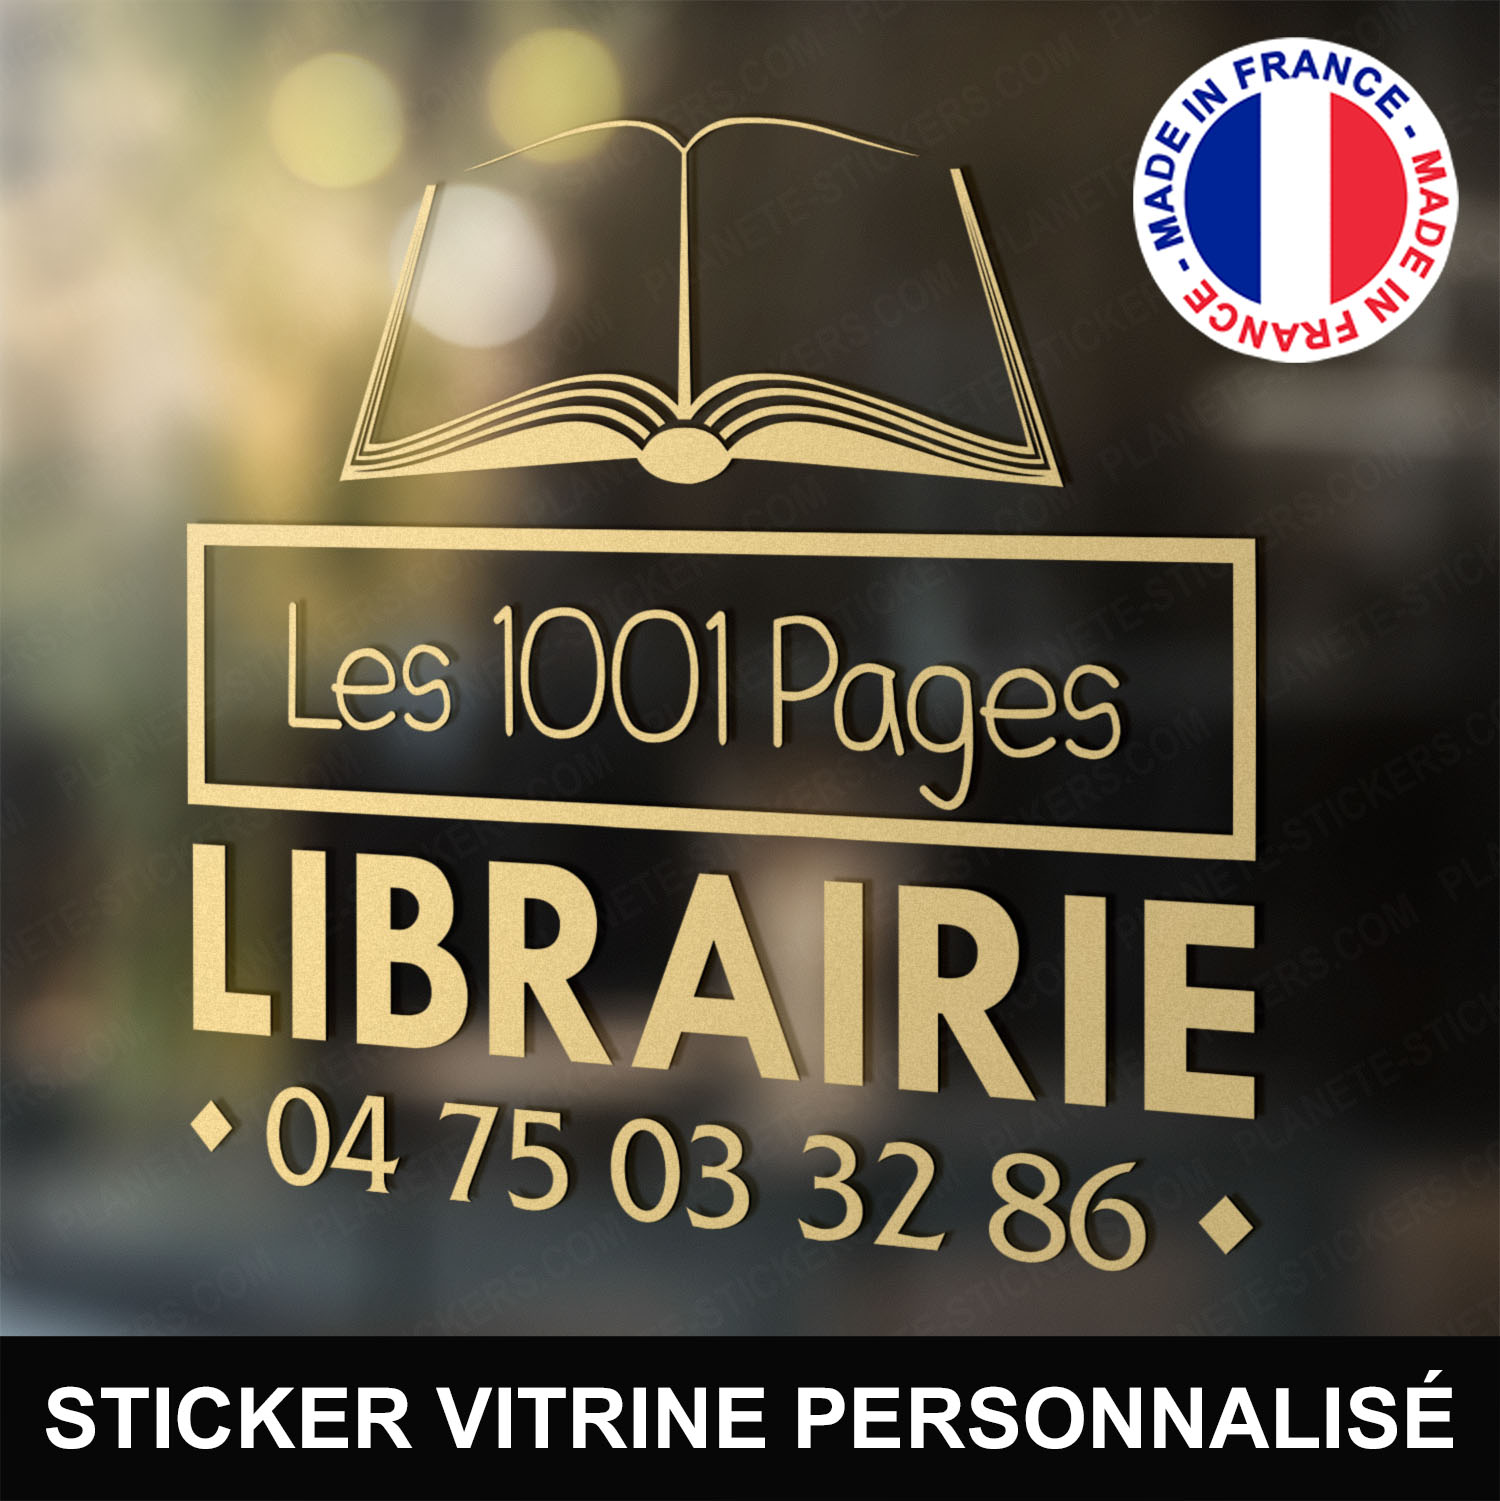 ref5librairievitrine-stickers-librairie-vitrine-sticker-personnalisé-personnalisable-autocollant-pro-libraire-vitre-professionnel-logo-livre-ouvert